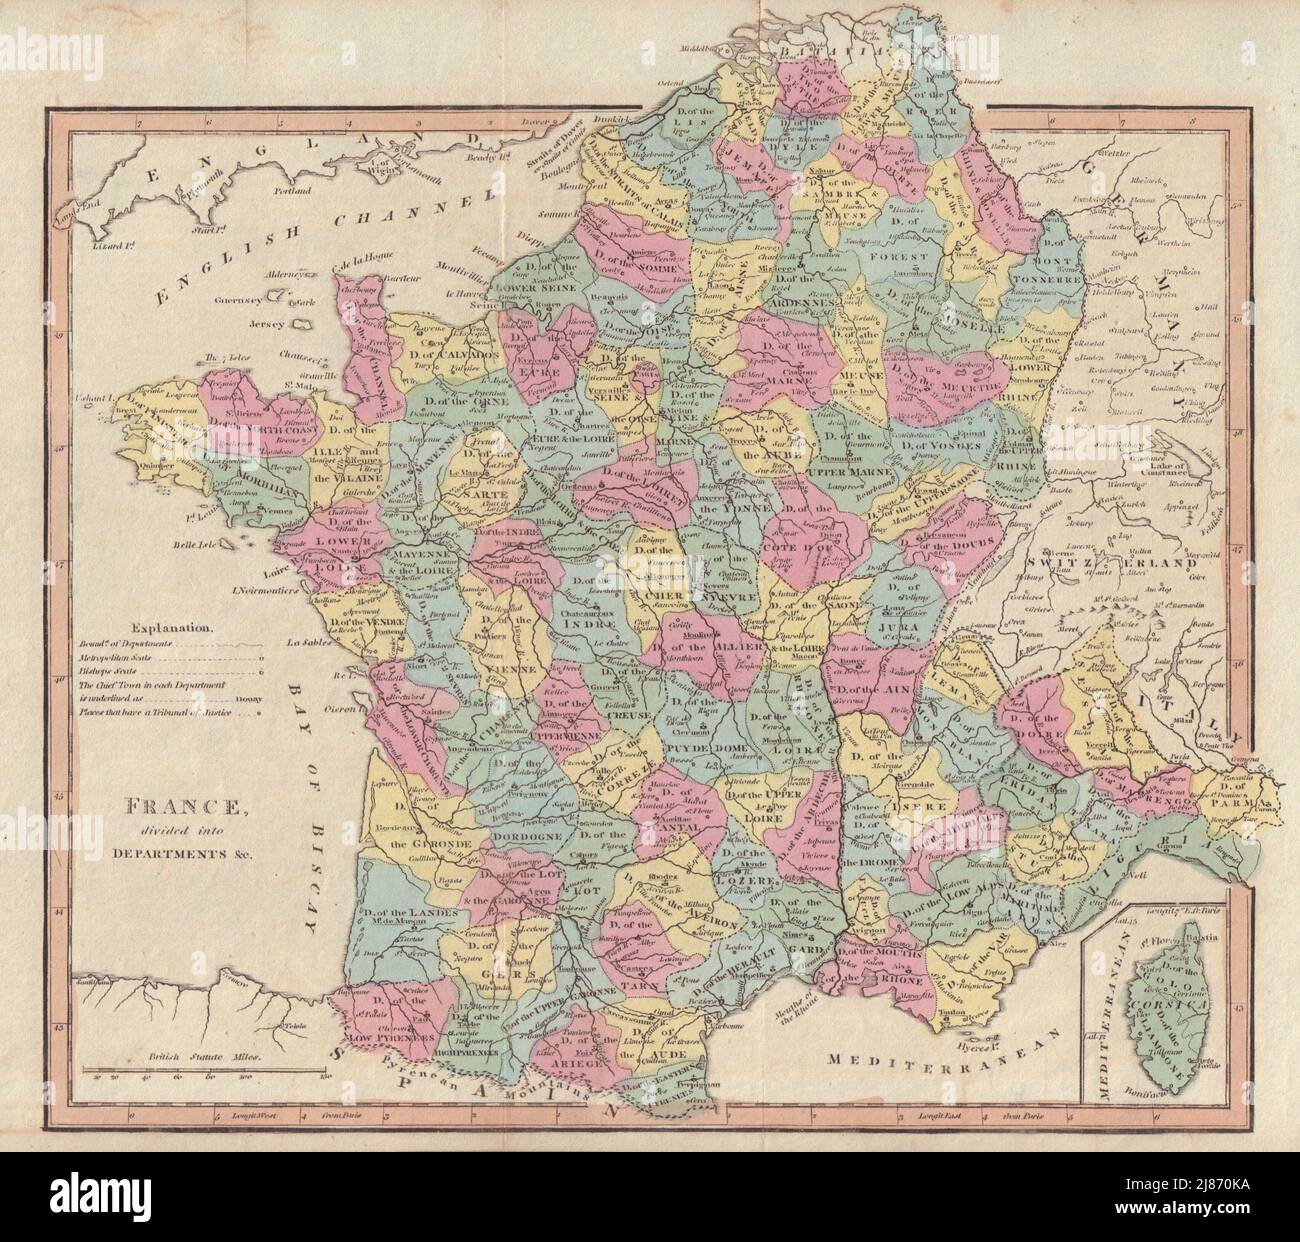 Frankreich gliedert sich in Abteilungen. Erstes Französisches Kaiserreich/Republik. COOKE 1817-Karte Stockfoto